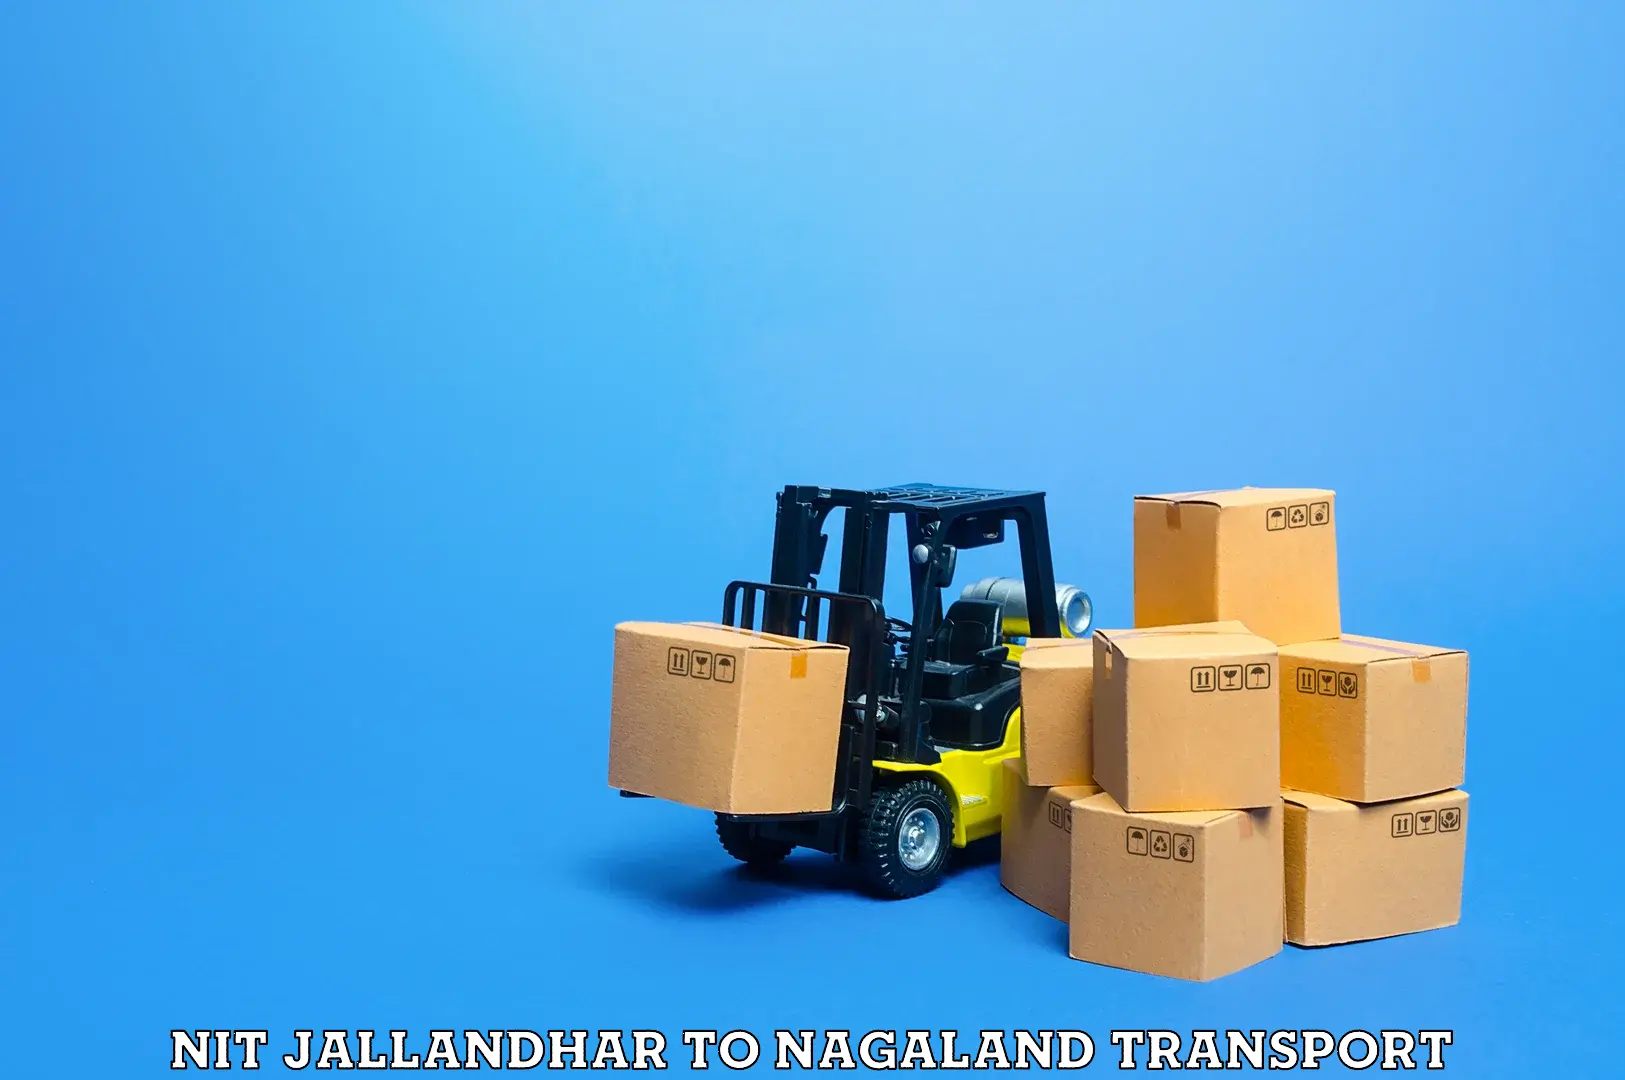 Express transport services NIT Jallandhar to NIT Nagaland